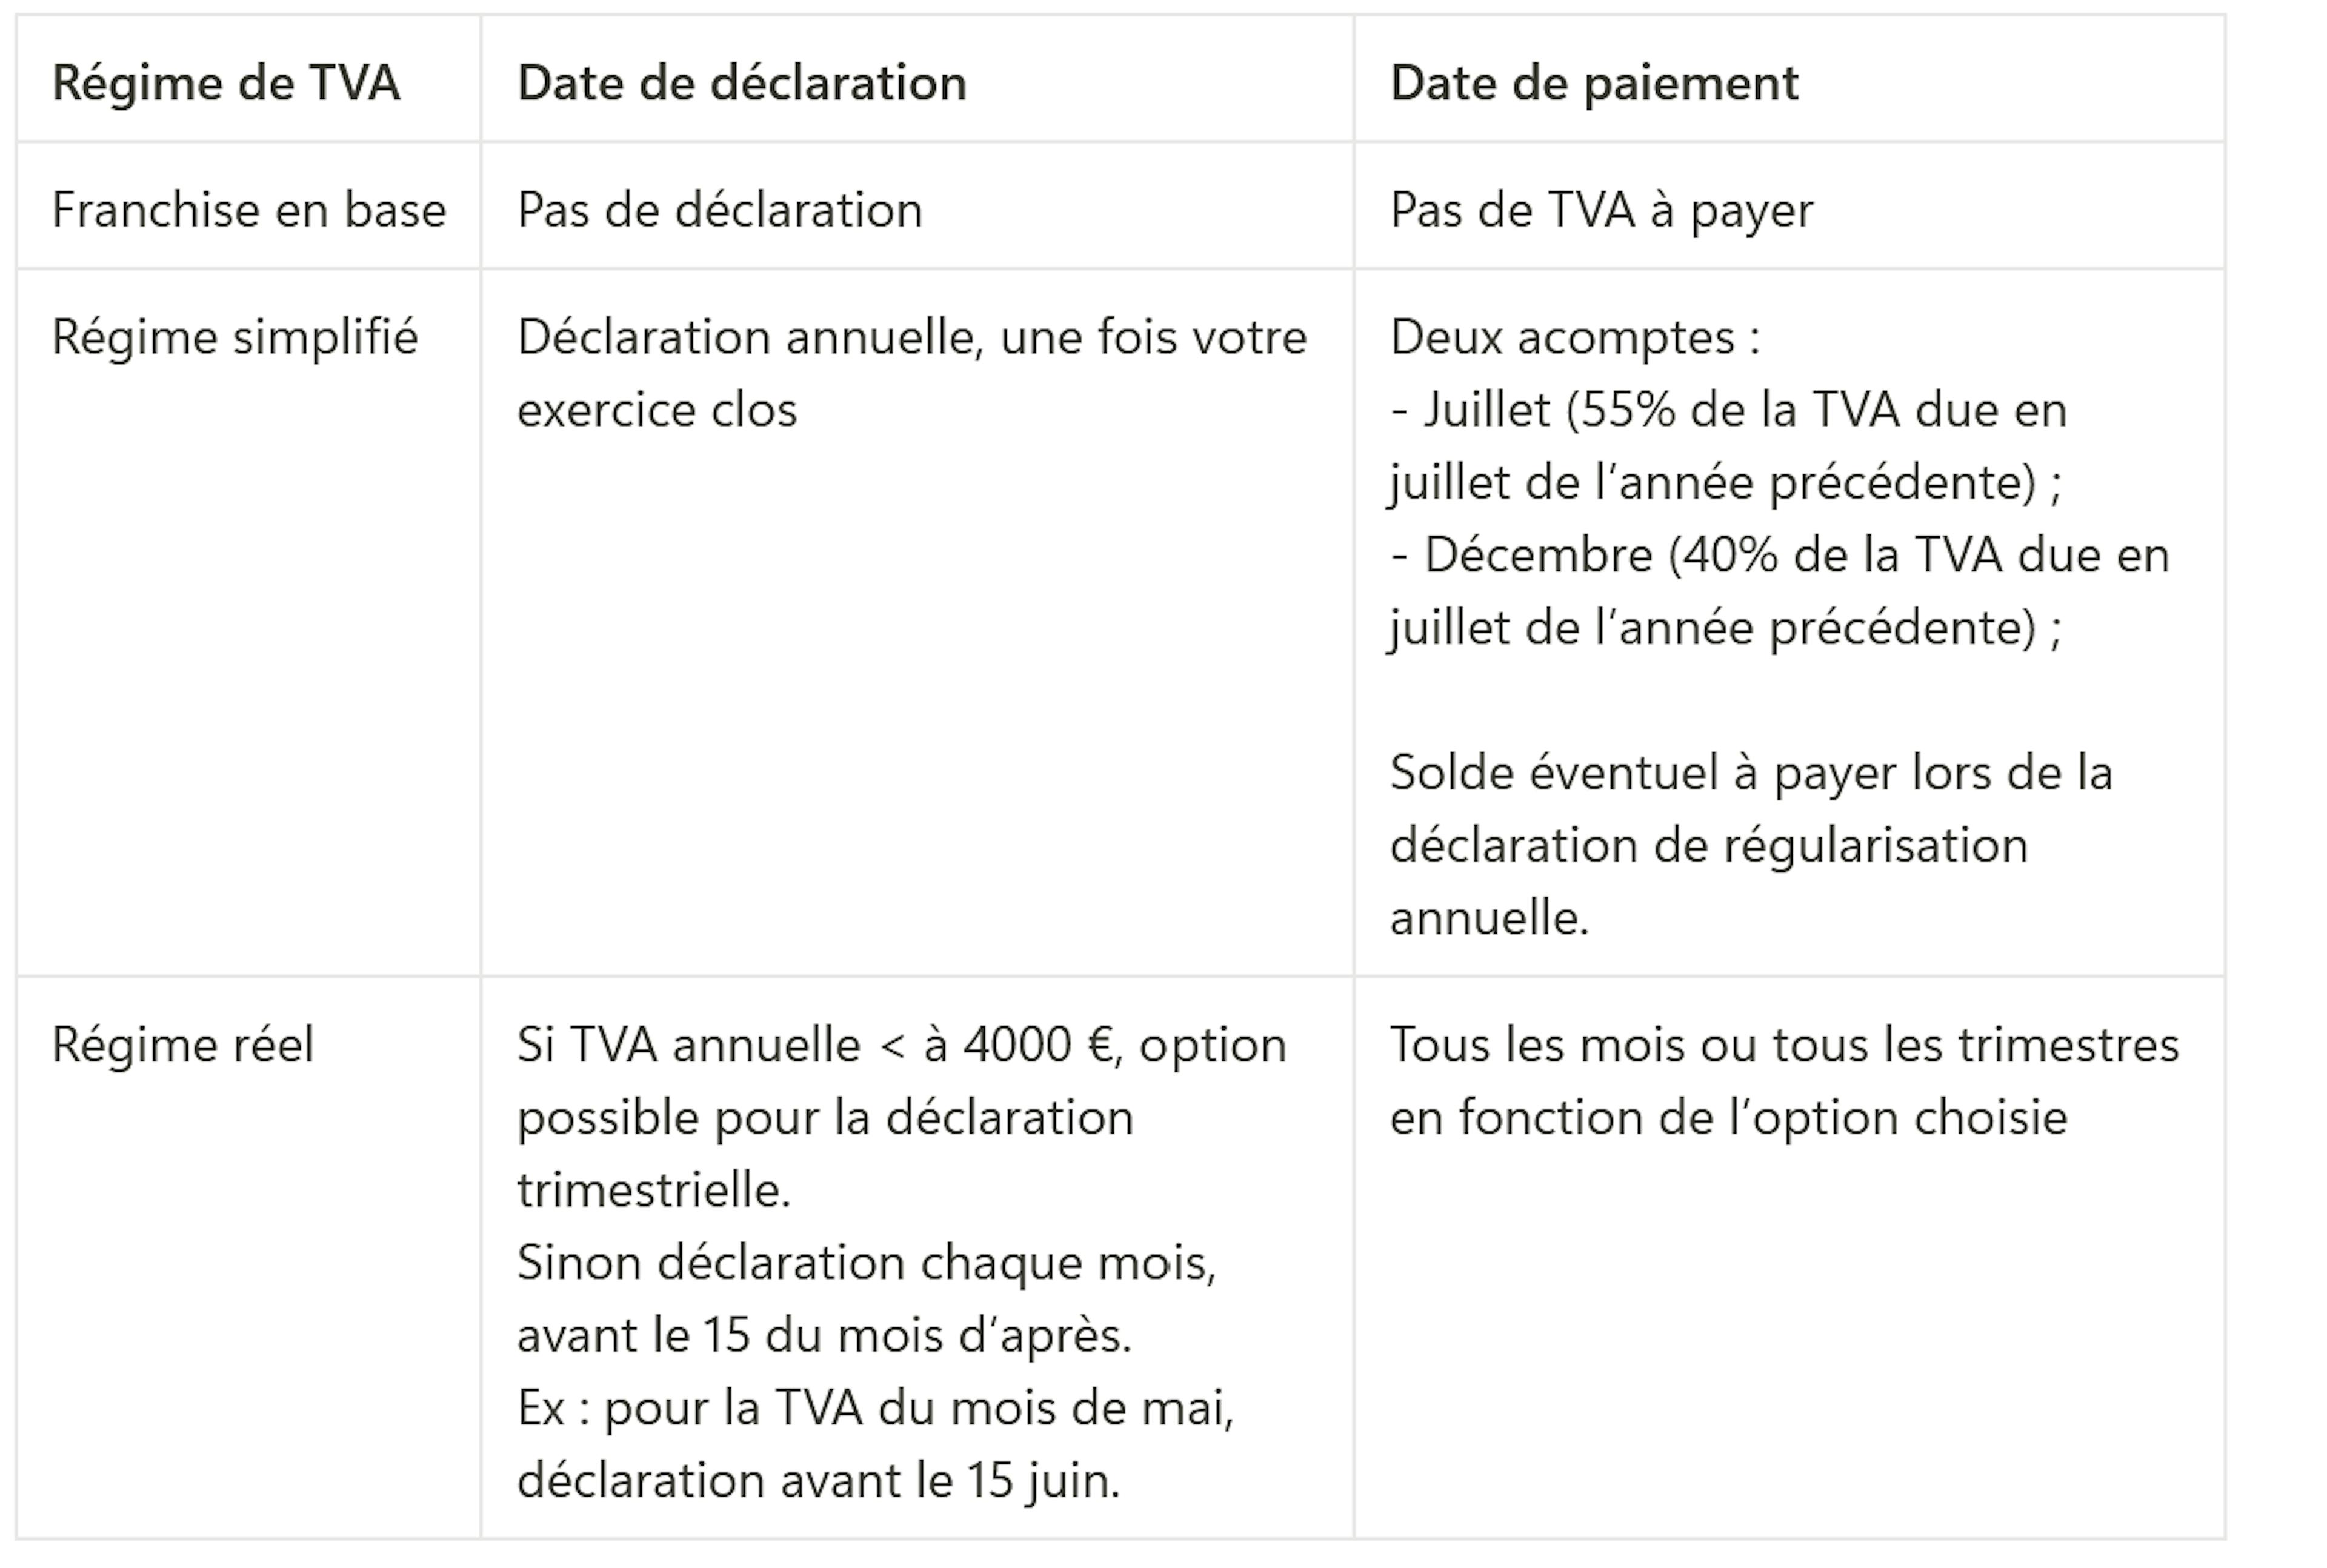 Tableau dates de déclaration et de paiement de la TVA (en fonction du régime)